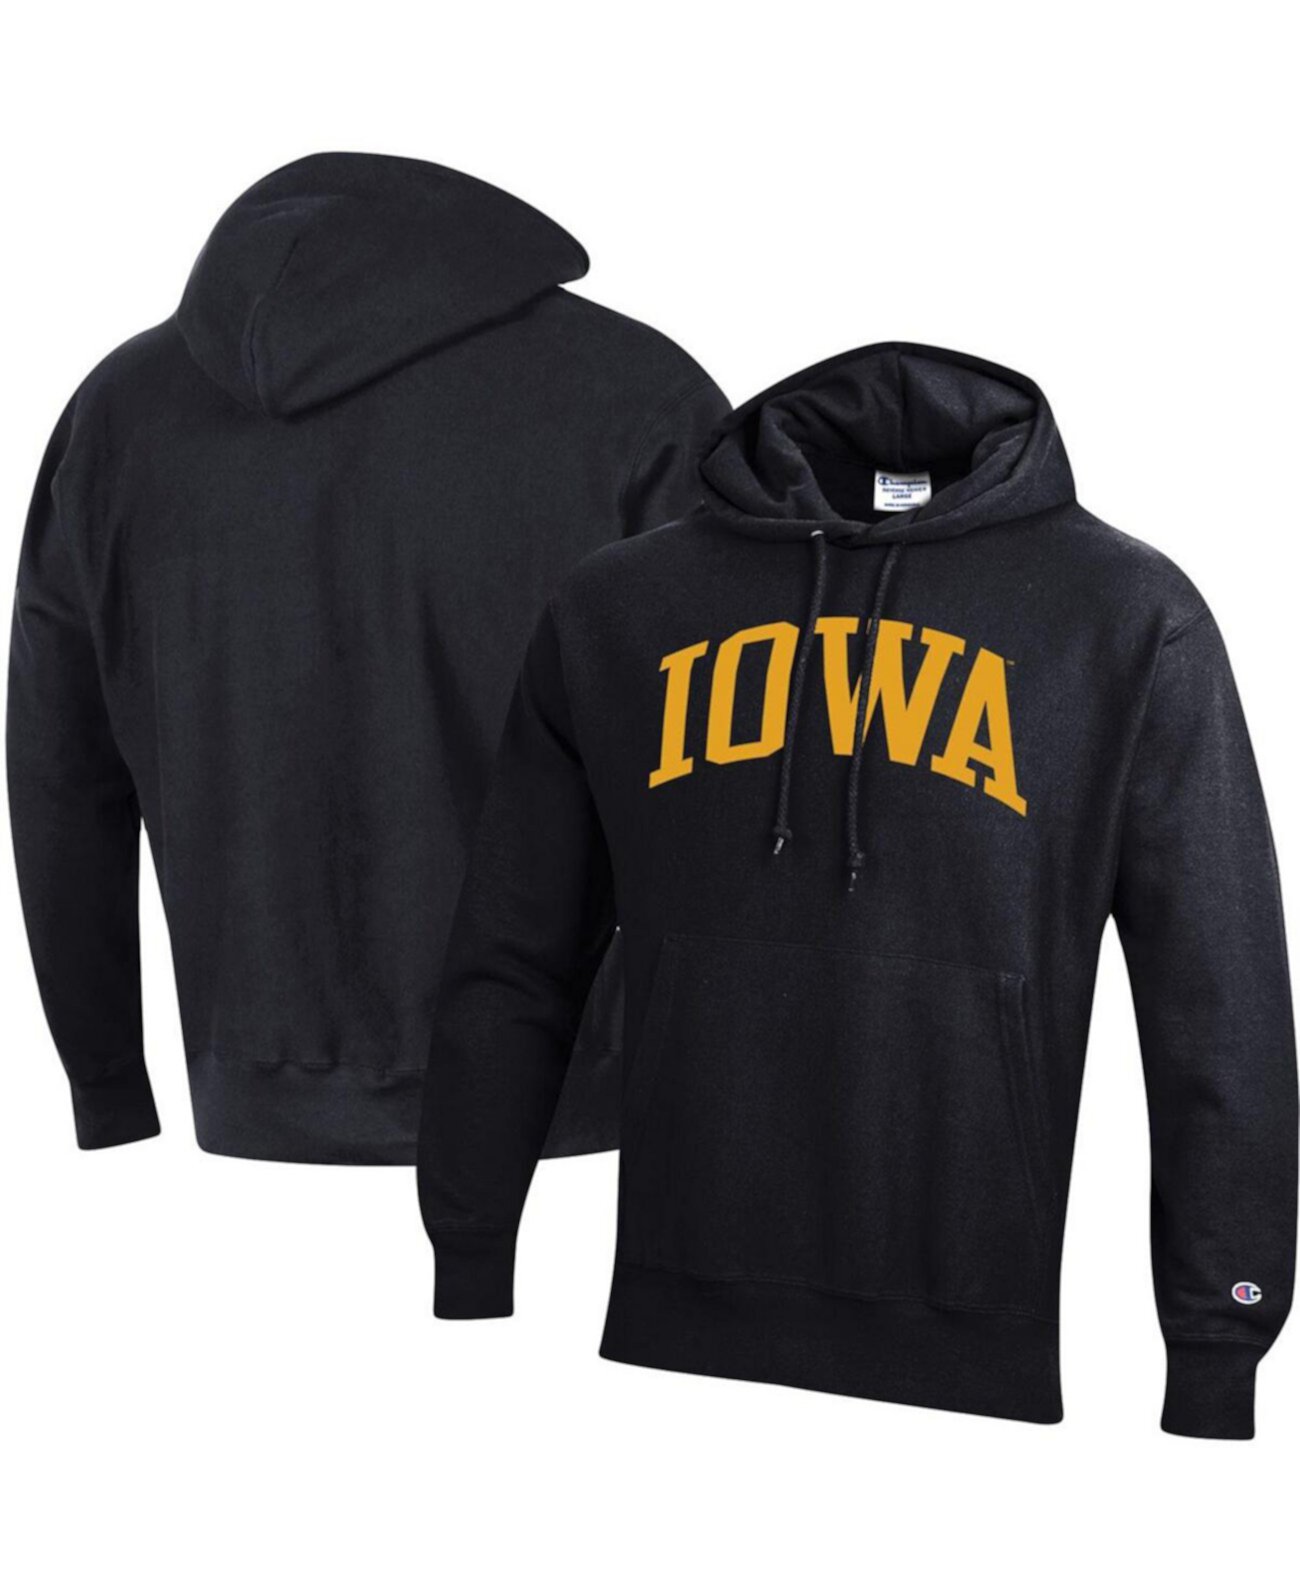 Мужской черный пуловер с капюшоном Iowa Hawkeyes Team Arch обратного переплетения Champion